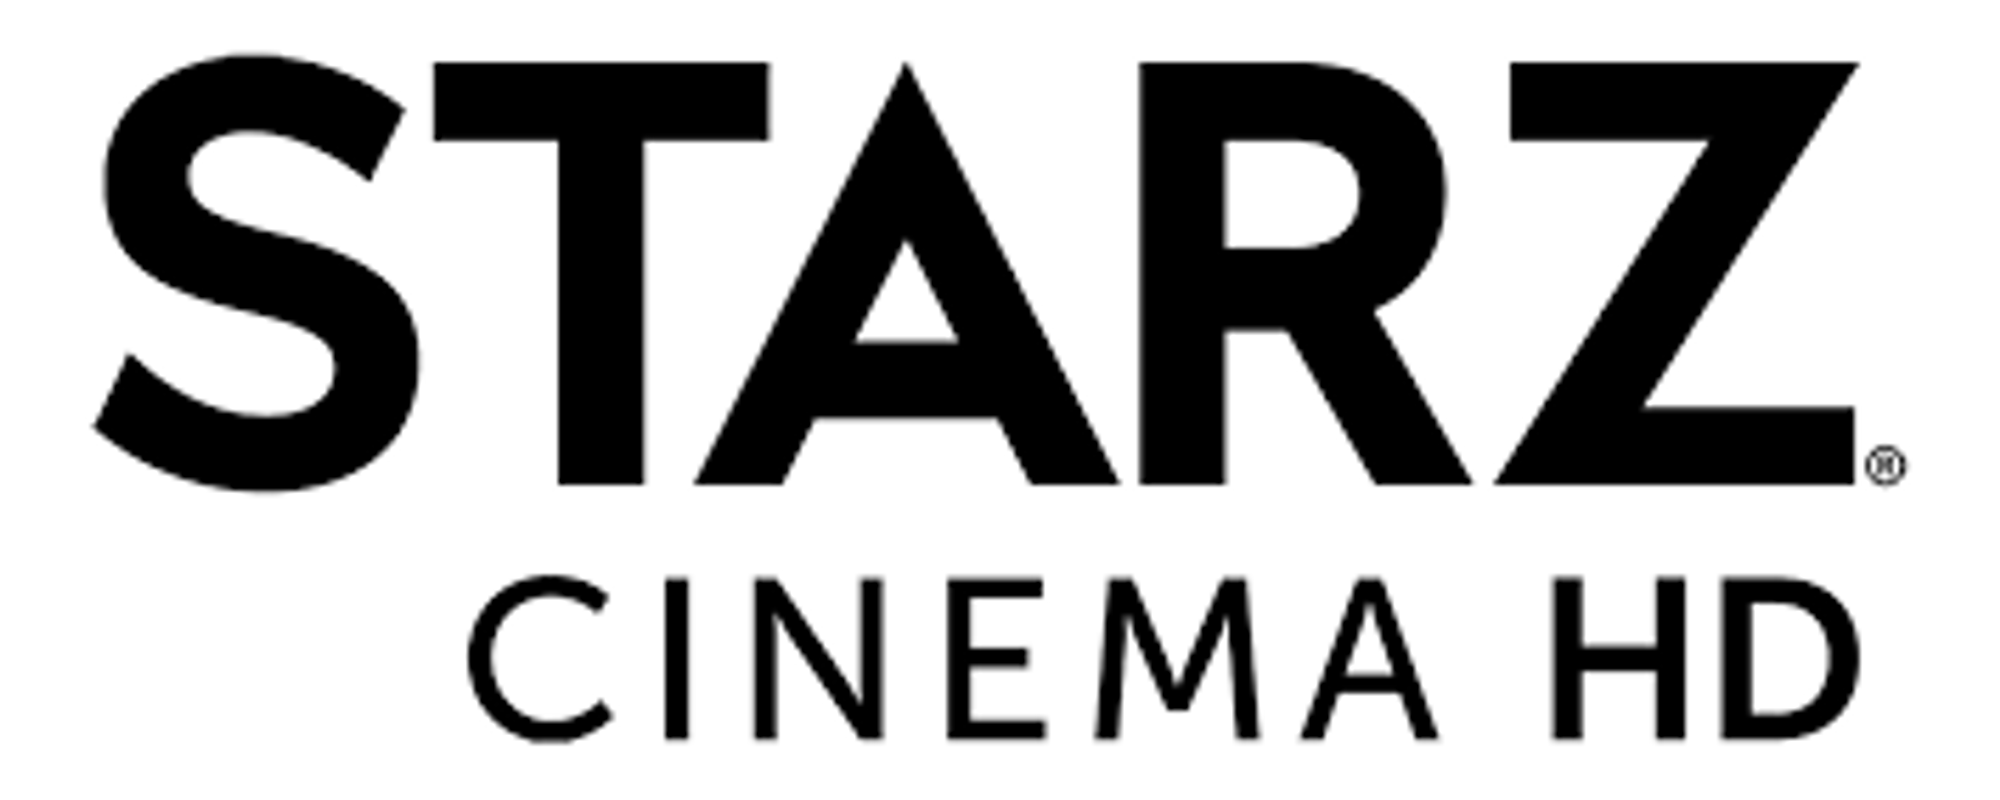 starz cinemahd logo.png